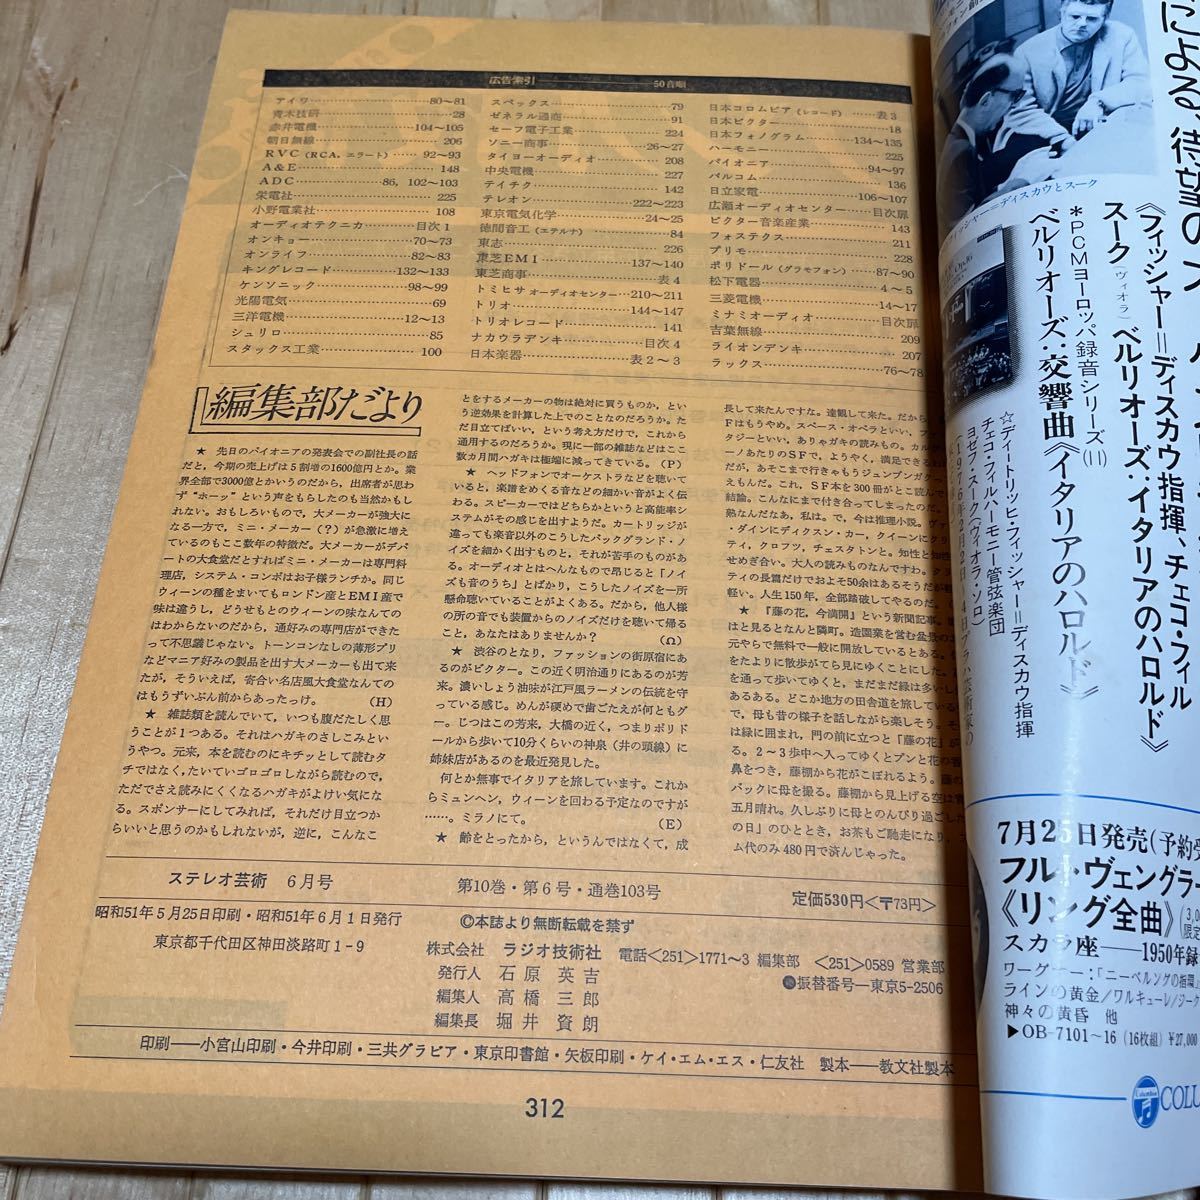 ステレオ芸術1976年6月号 ベストレコード ピアノ名曲10選 レコードによる装置のチェック法 他_画像10